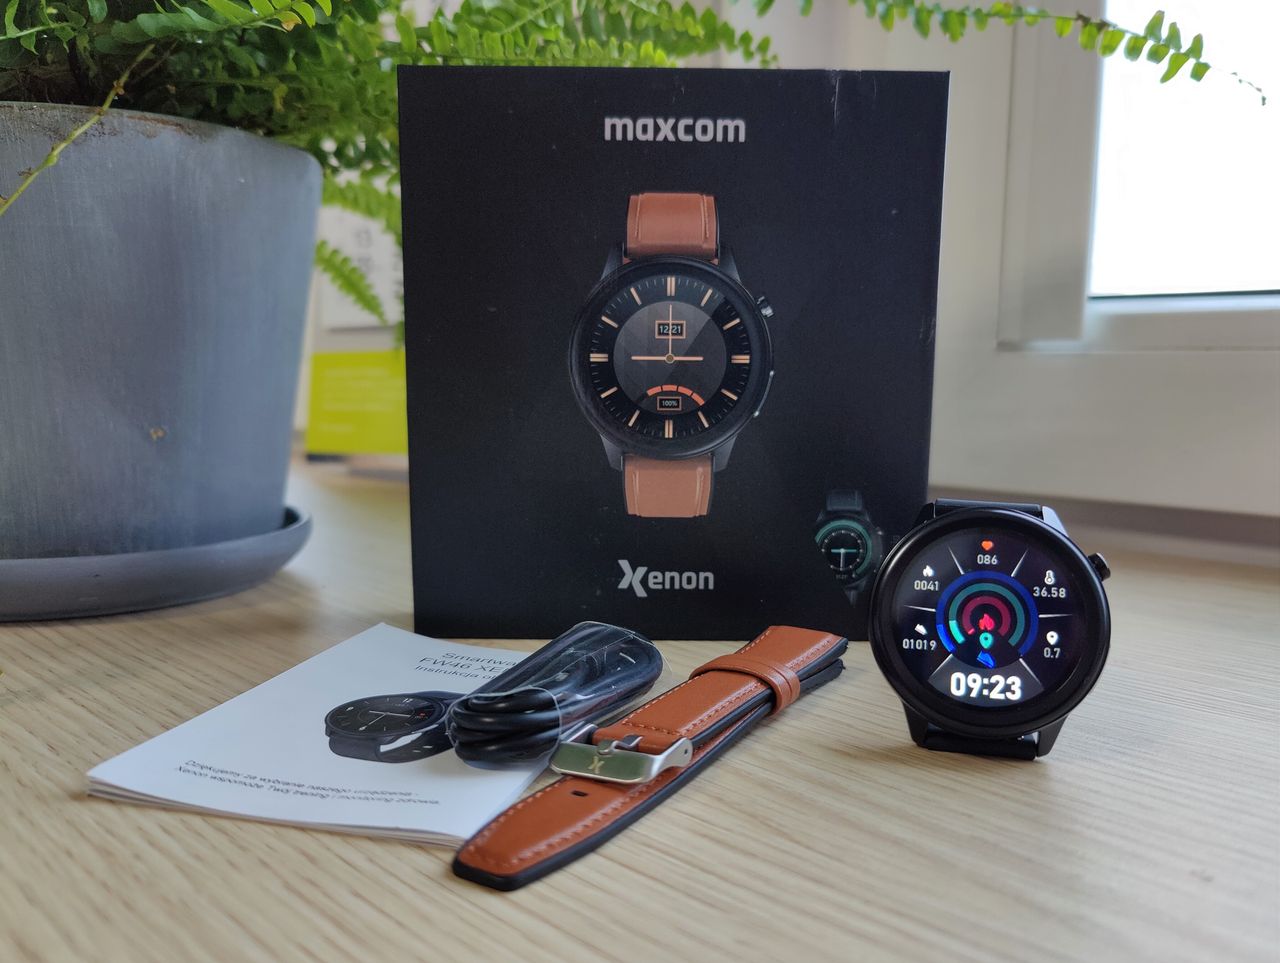 Maxcom FW46 Xenon - funkcjonalny smartwatch na każdą kieszeń!